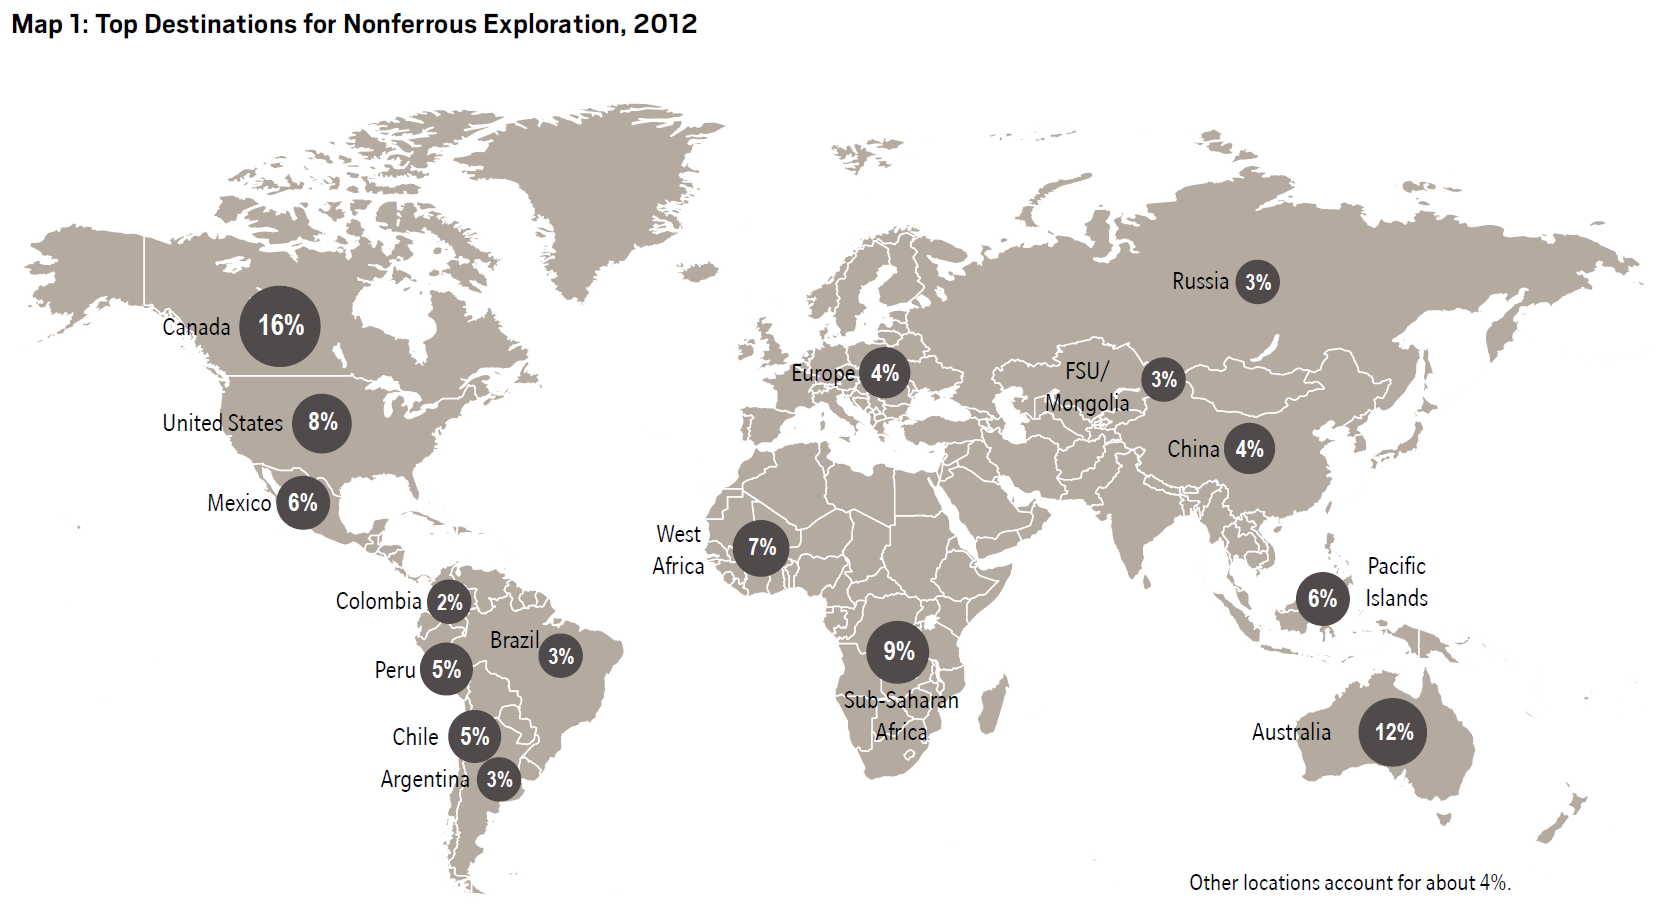 Australia 2do destino de exploración América Latina: 25% de la inversión en exploración Nota: Se refiere a